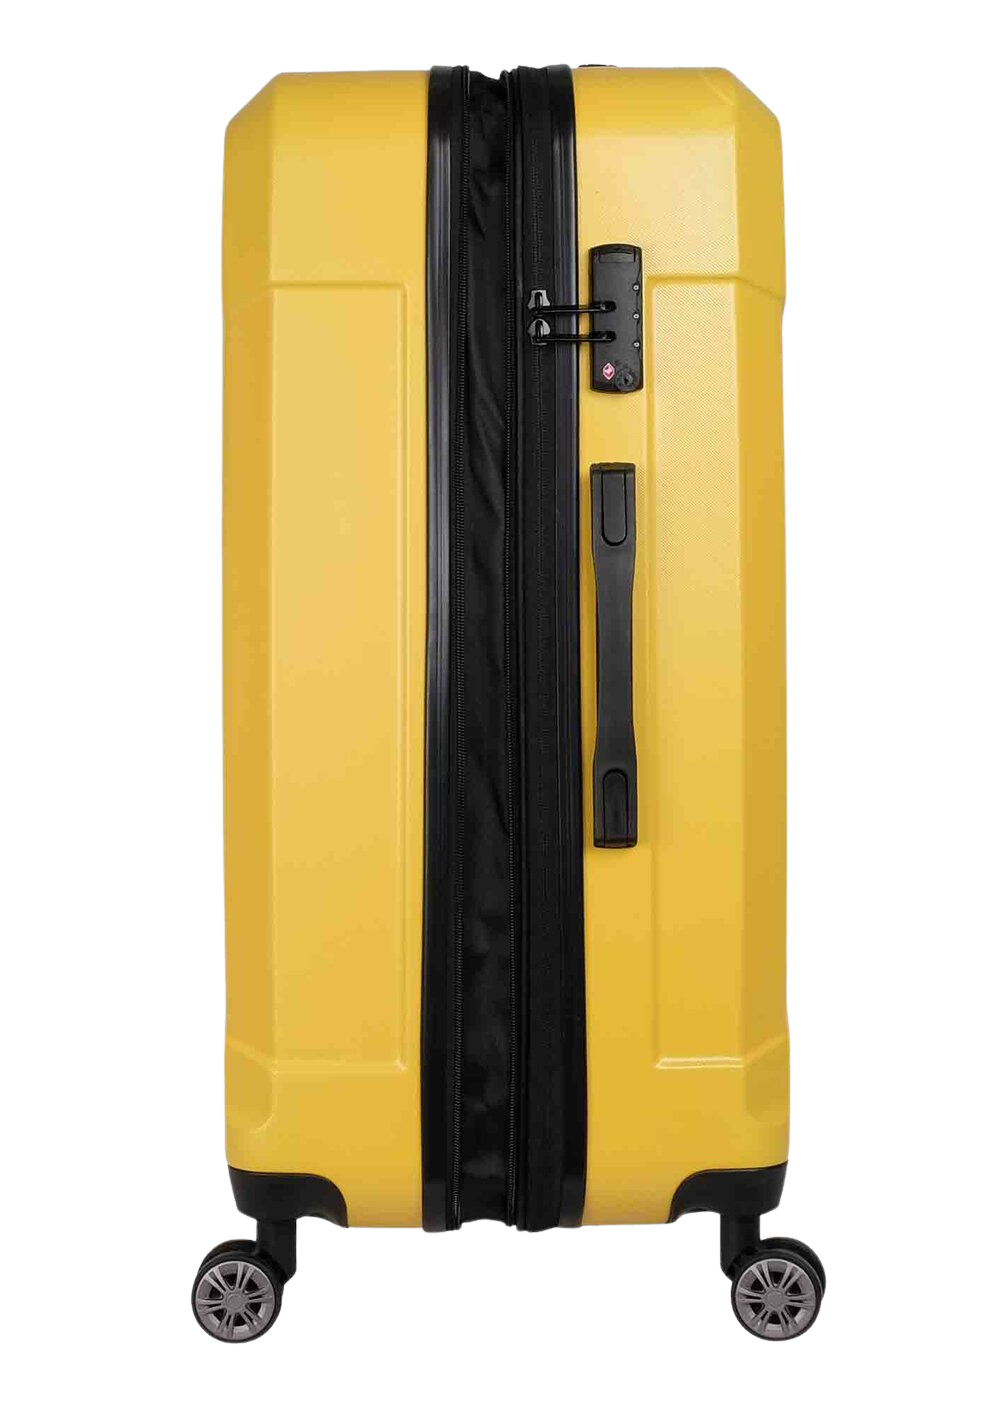 ✮מותג שוויצרי מקורי✮ מזוודה גדולה 28" קשיחה מבית המותג השוויצרי SwissBrand דגם Ranger